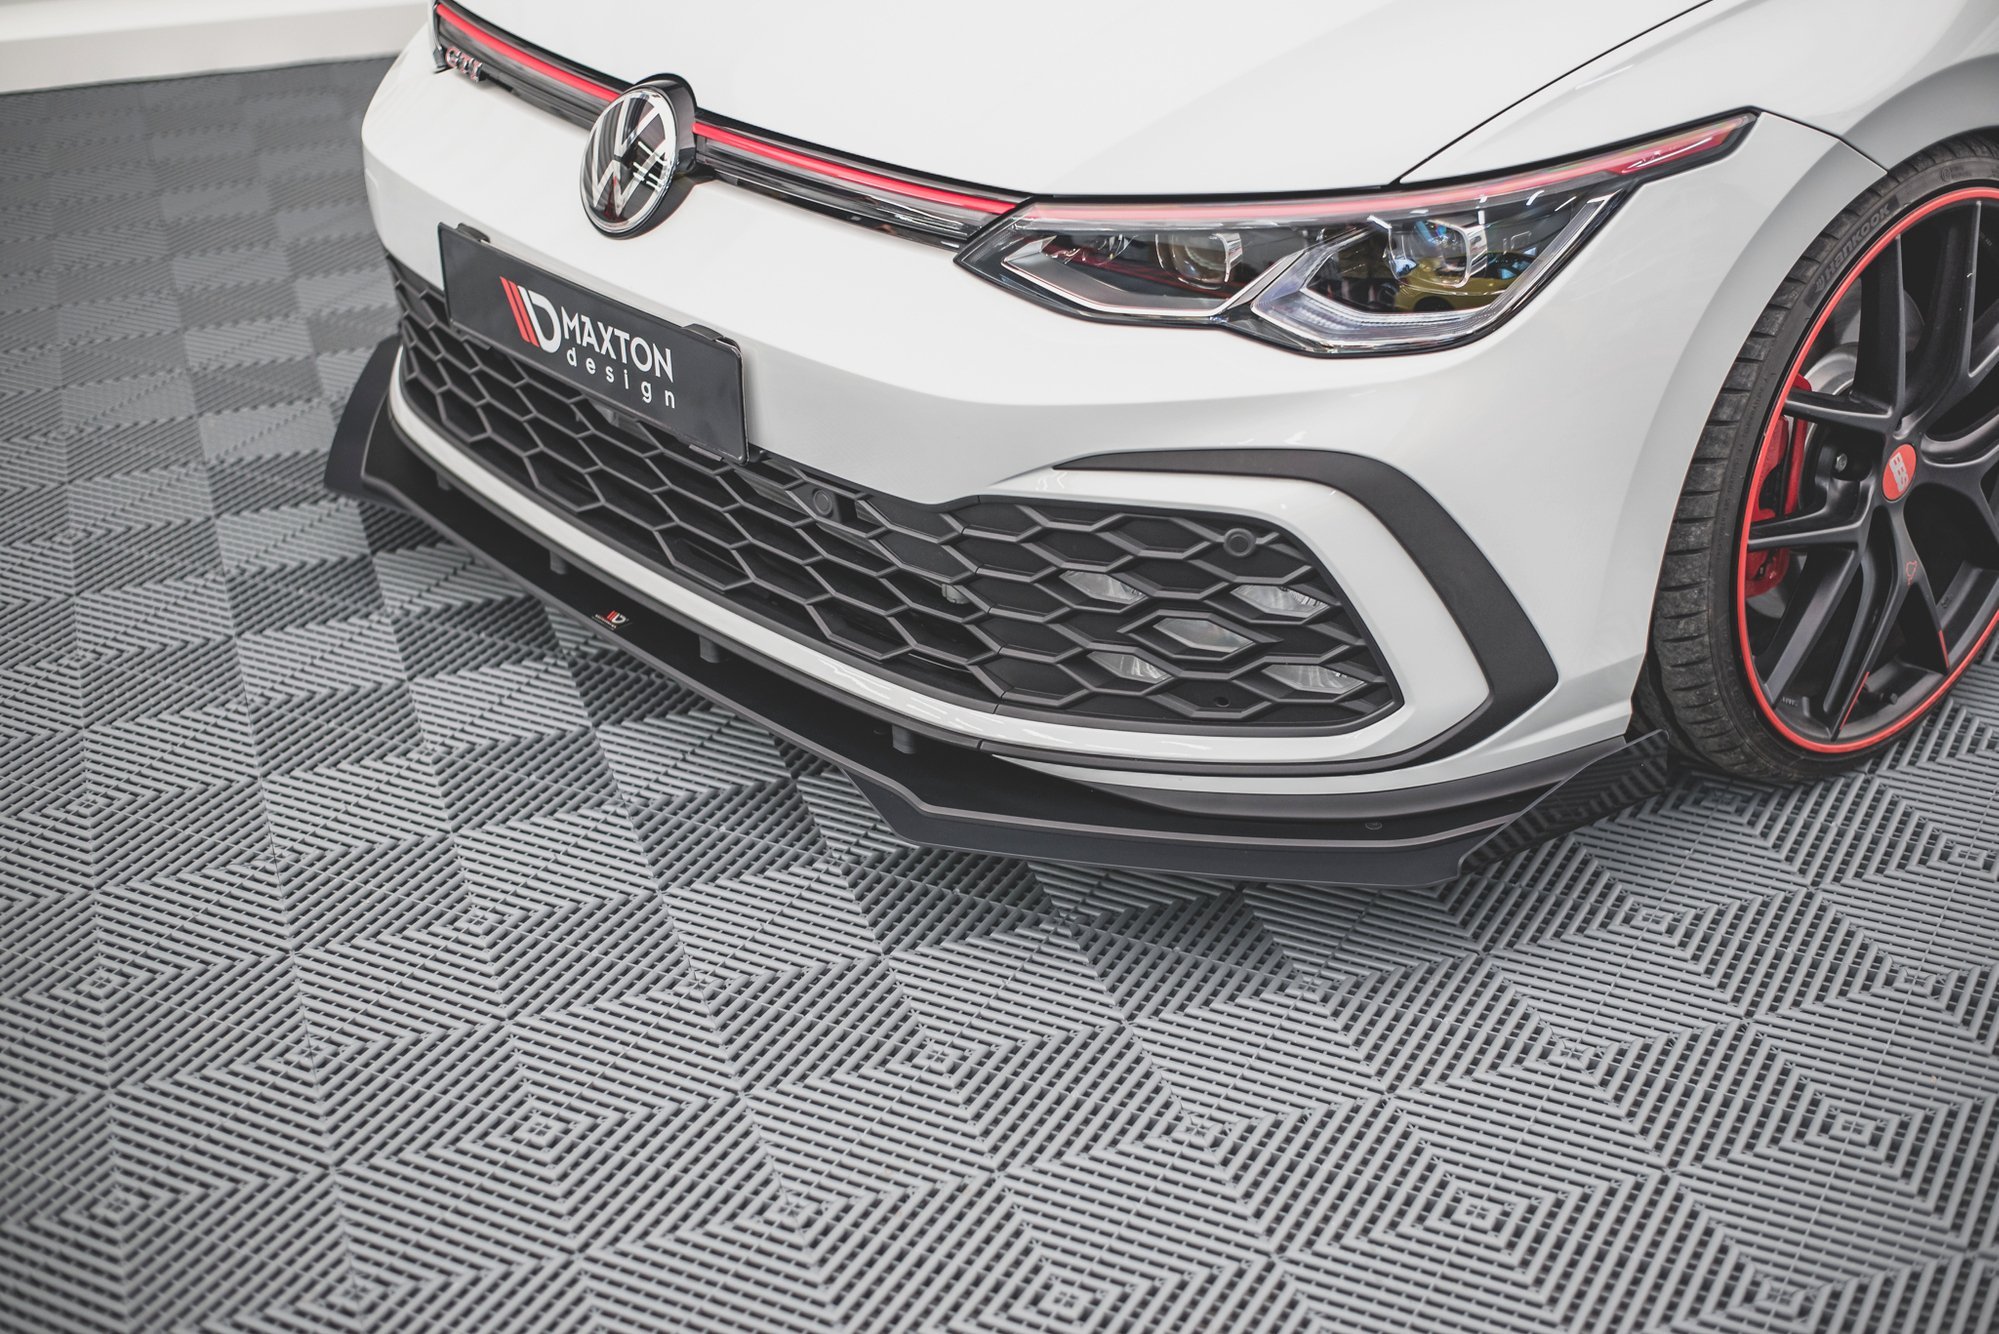 Maxton Design Robuste Racing Front Ansatz für passend +Flaps für Volkswagen Golf 8 GTI schwarz Hochglanz